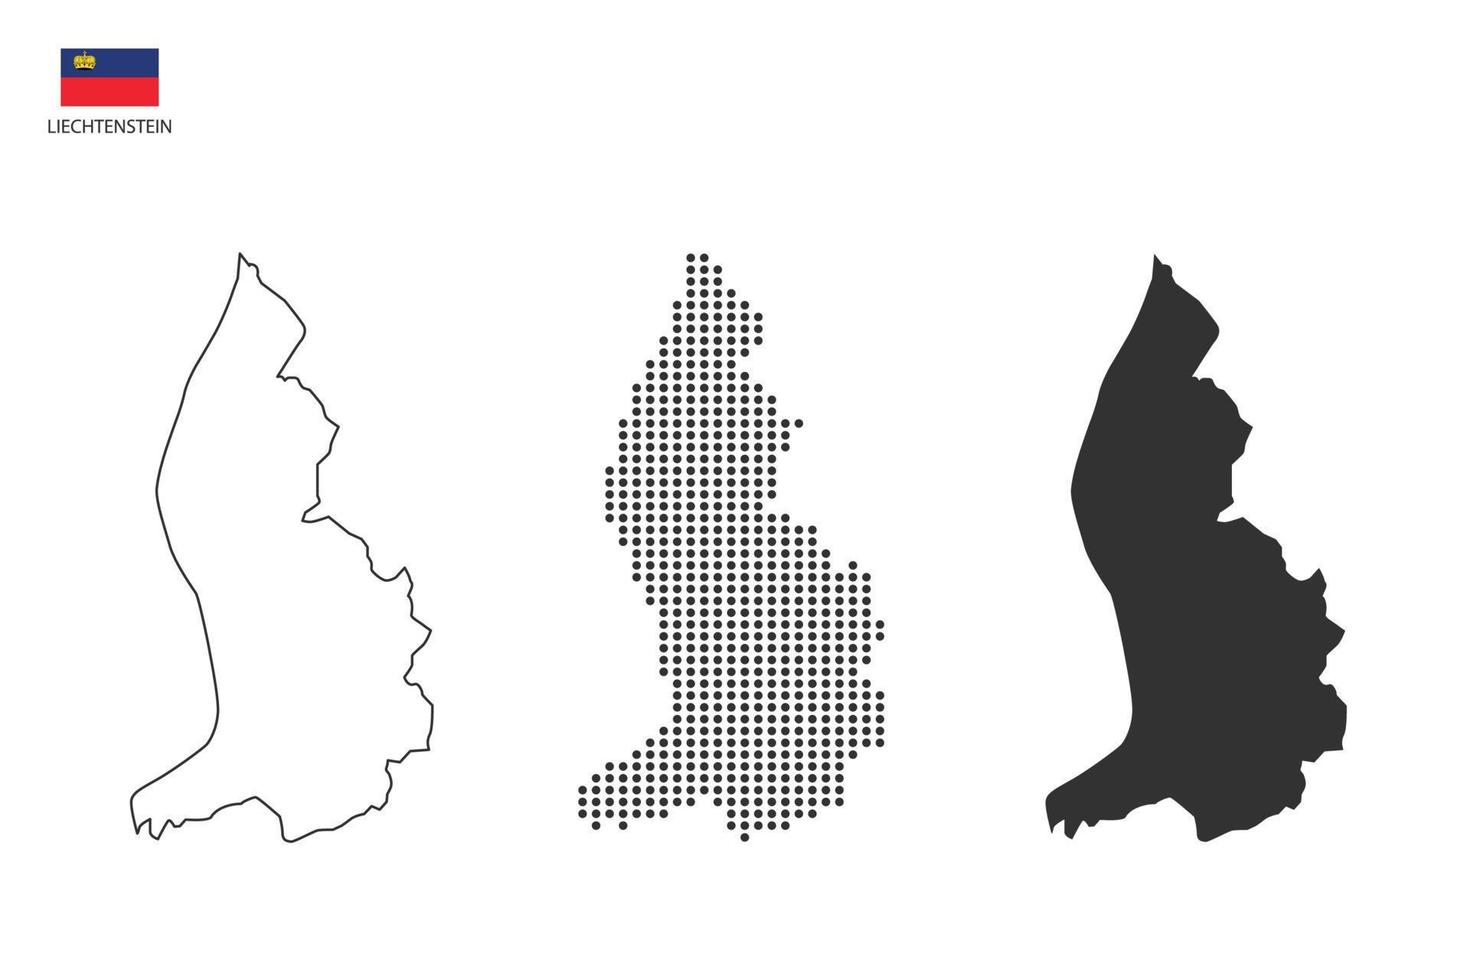 3 versies van Liechtenstein kaart stad vector door dun zwart schets eenvoud stijl, zwart punt stijl en donker schaduw stijl. allemaal in de wit achtergrond.